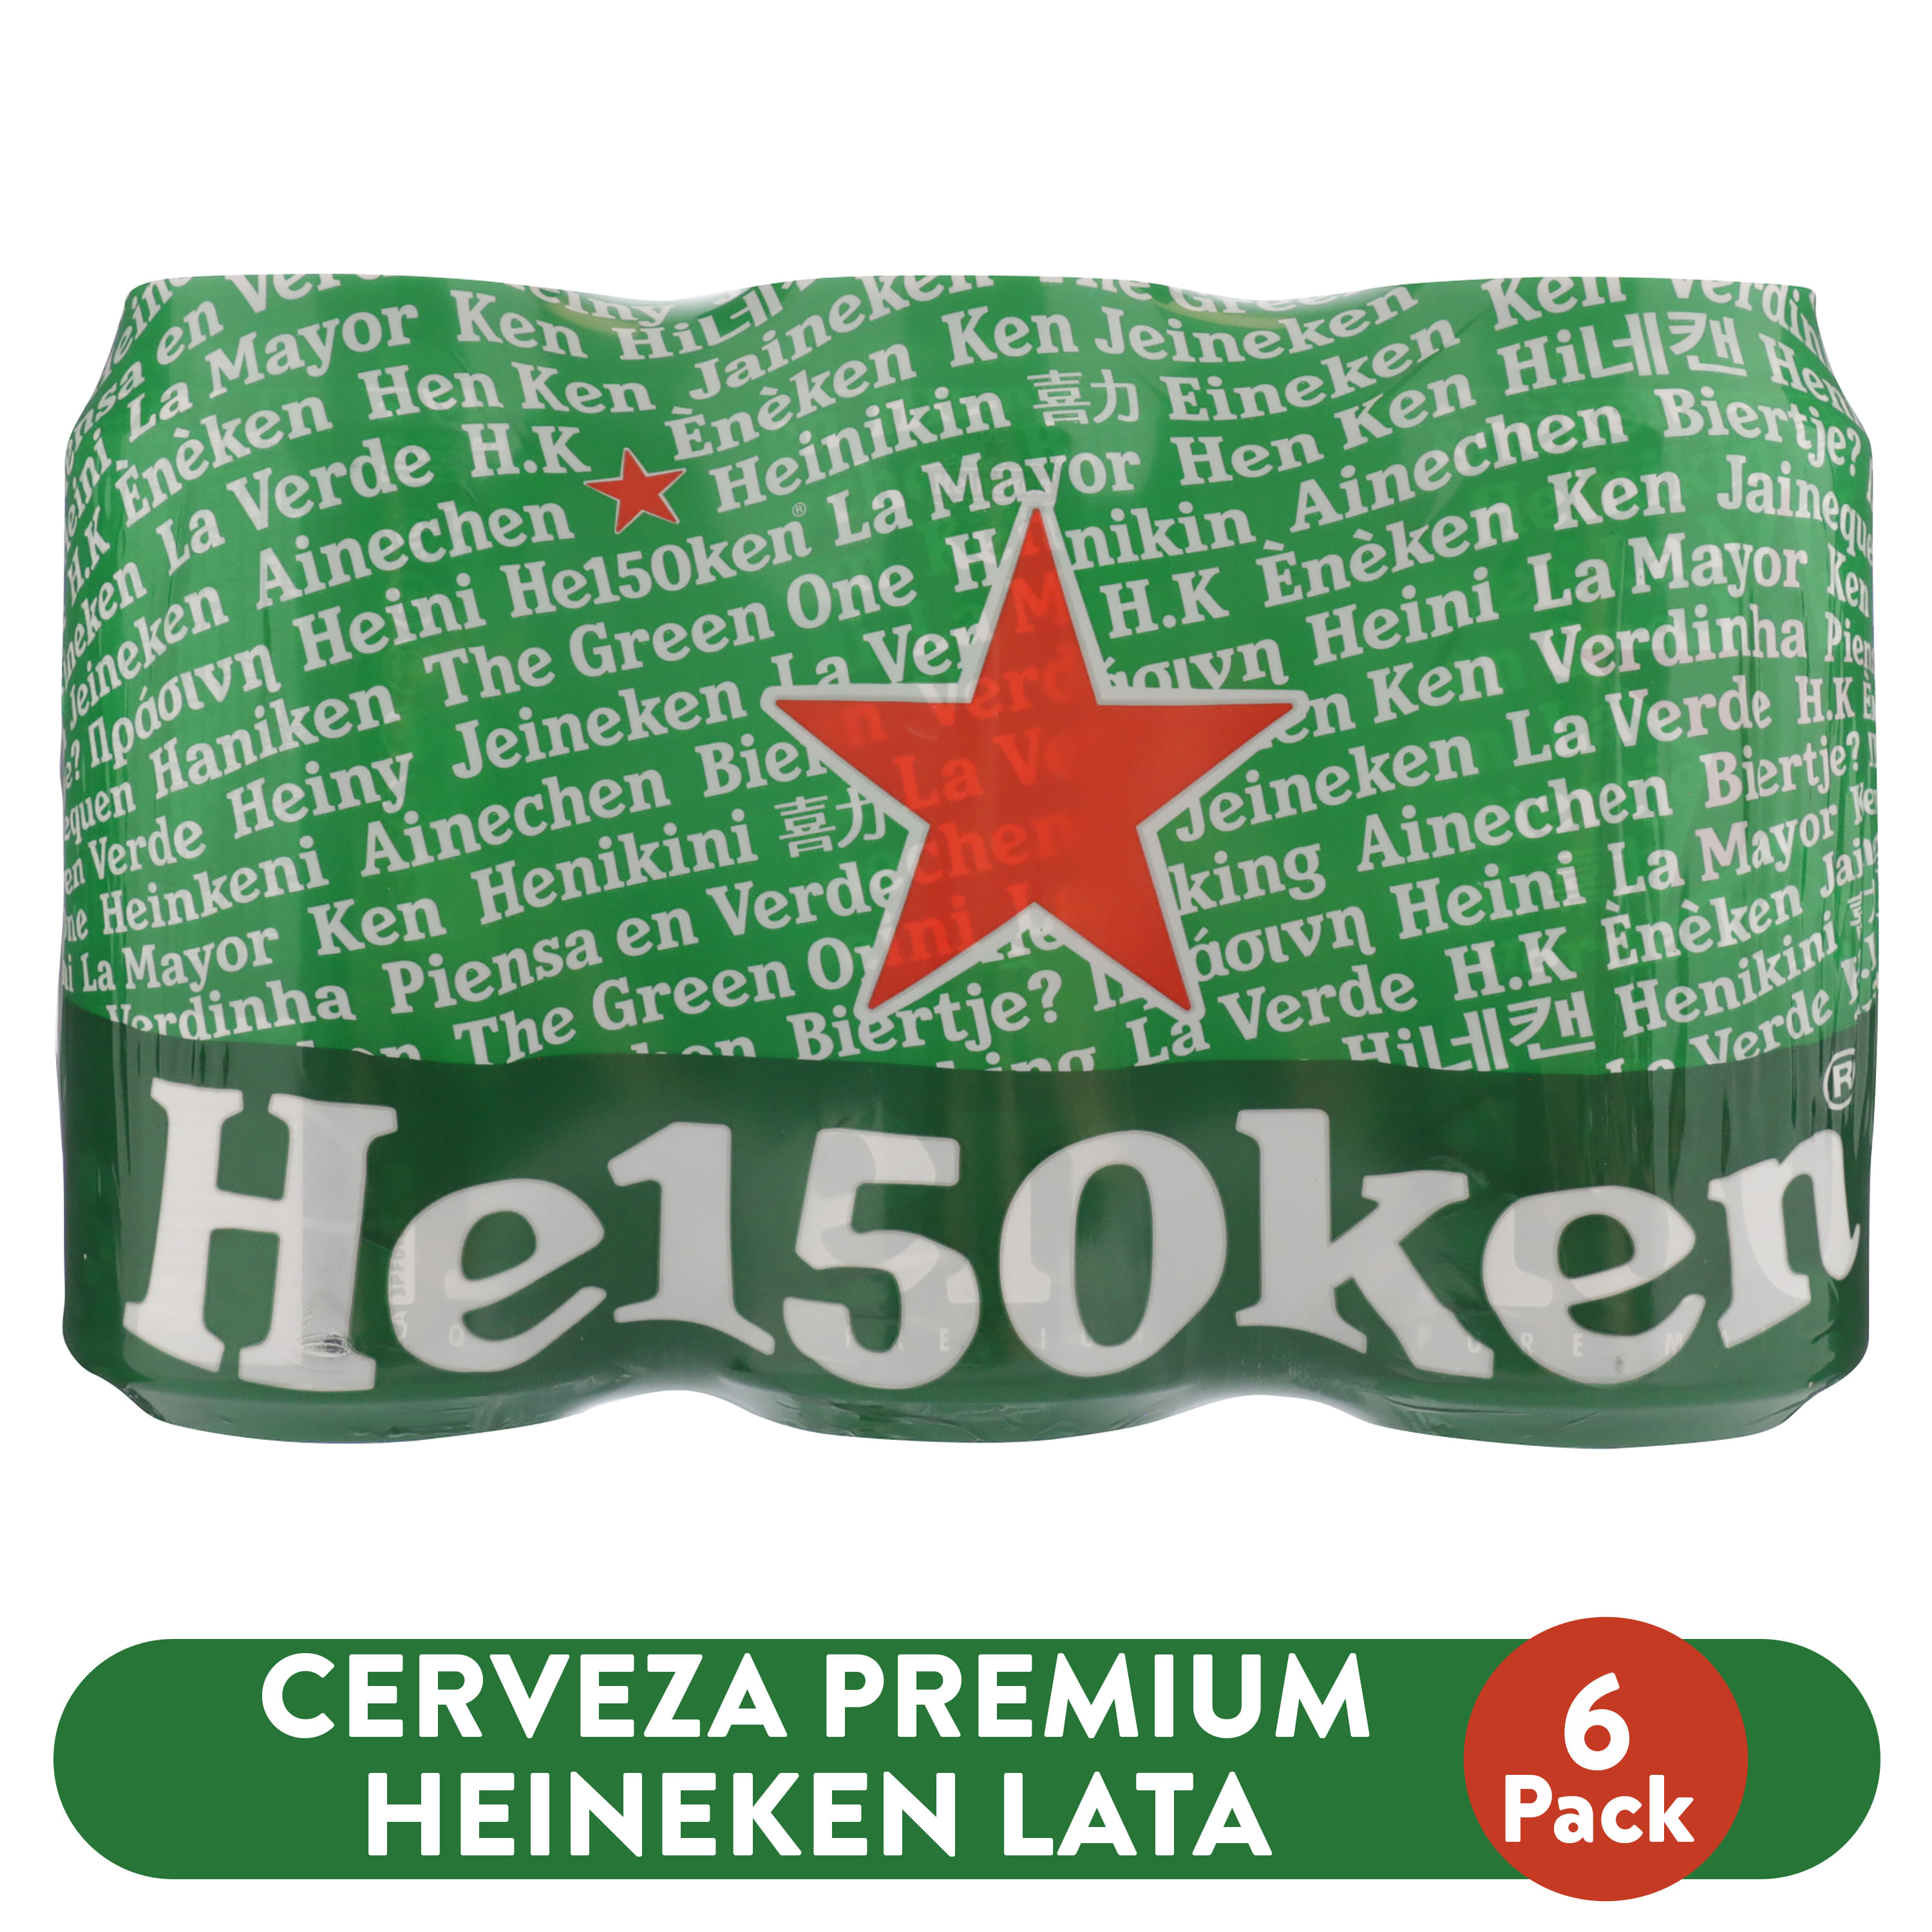 6-Pack-Cerveza-Premium-Heineken-lata-355ml-1-26580